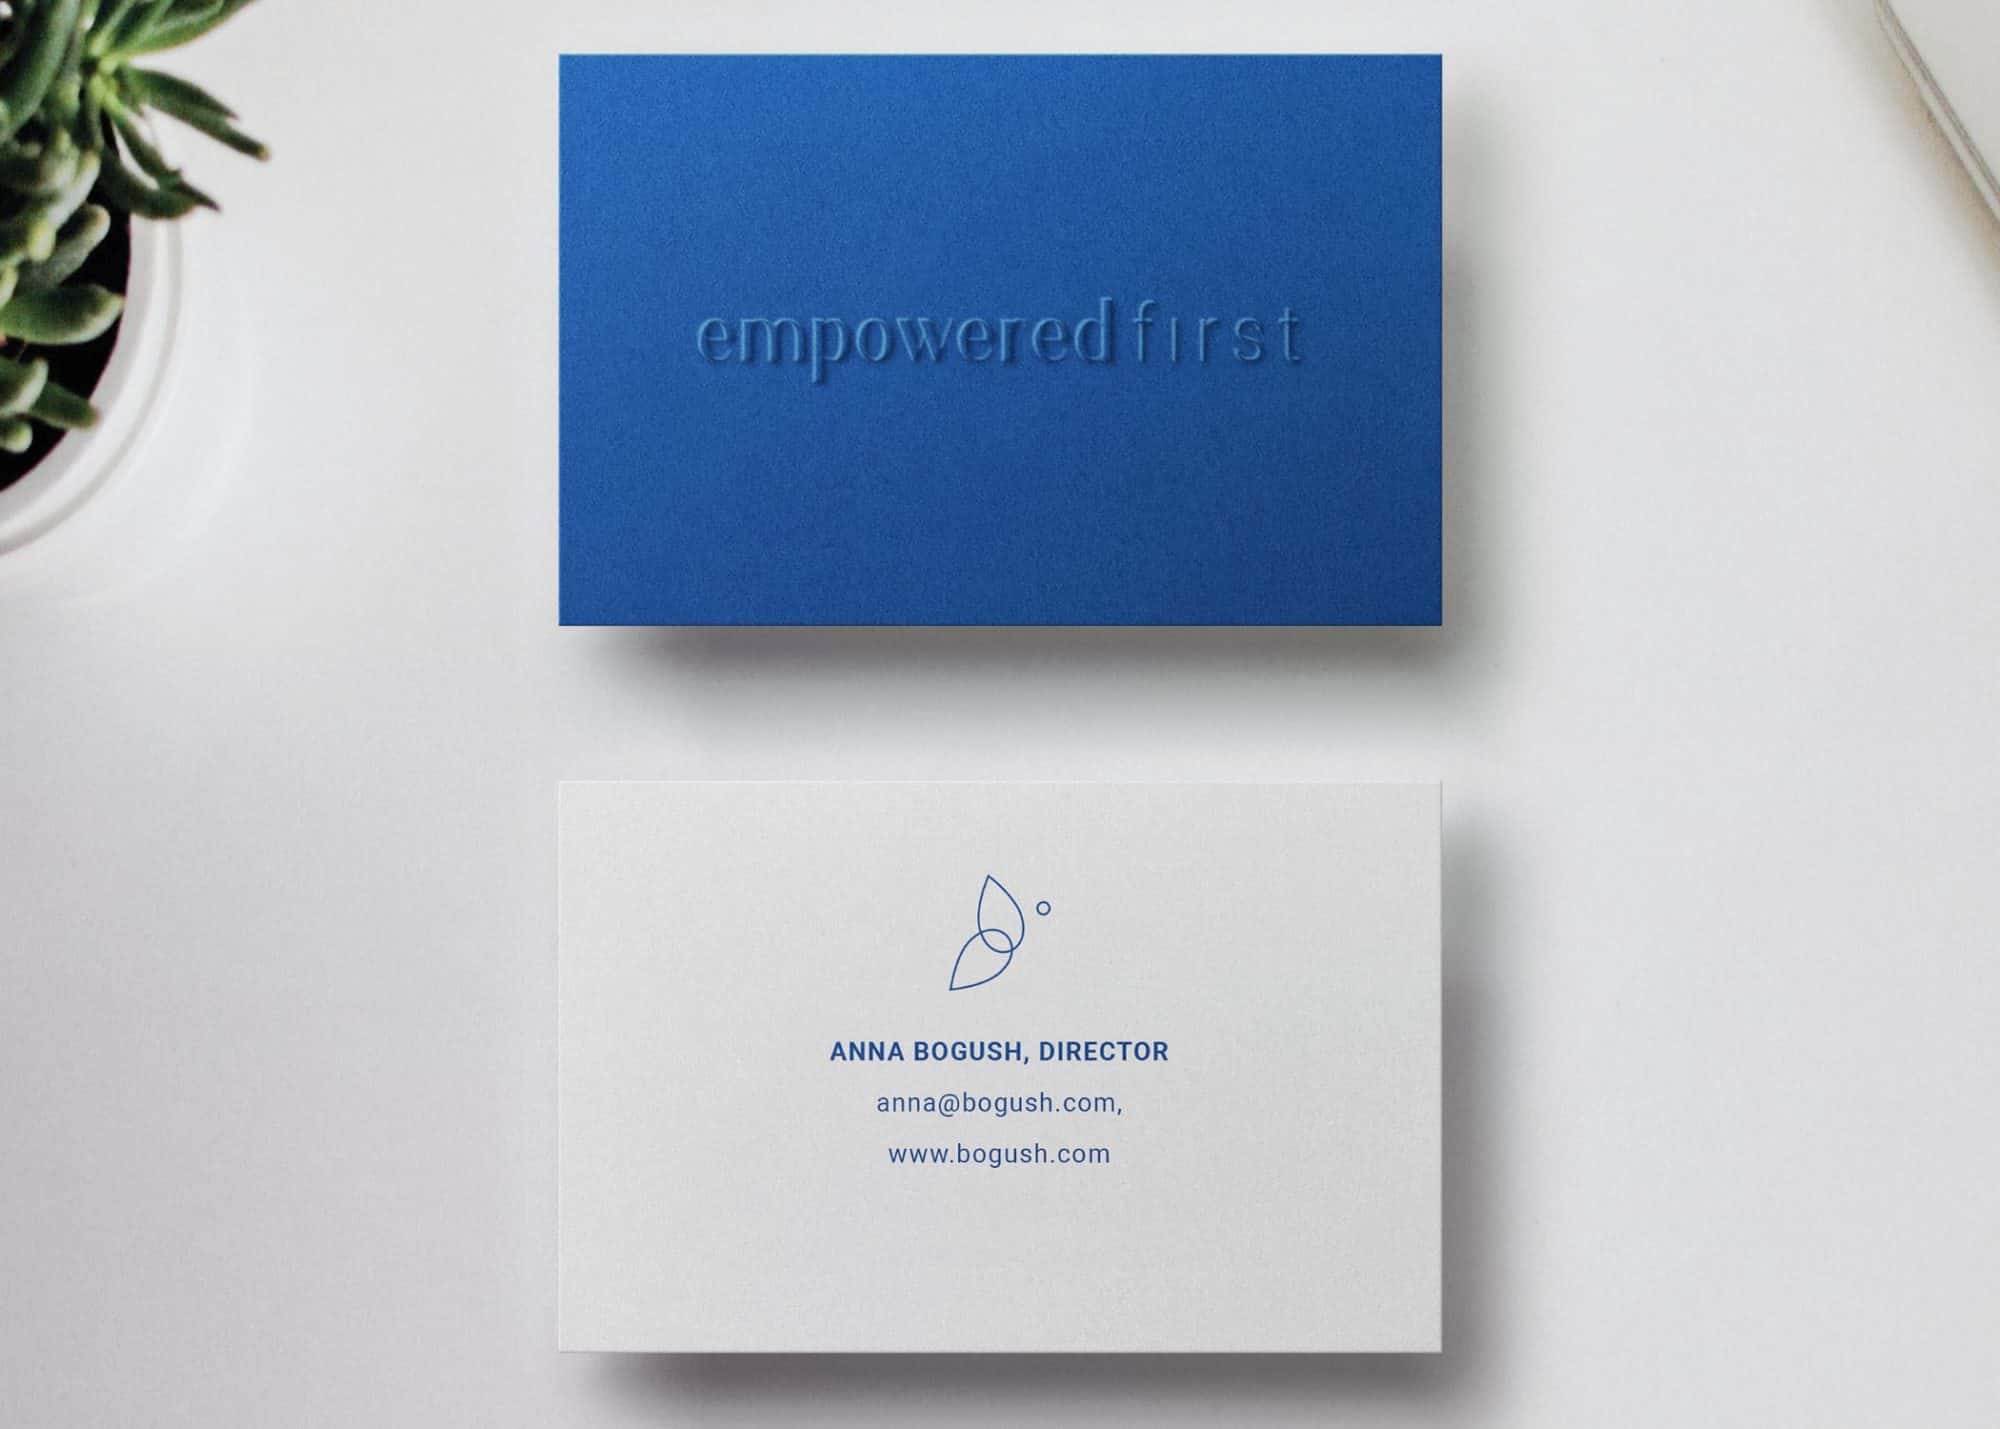 empoweredfirst brand identity design (15)